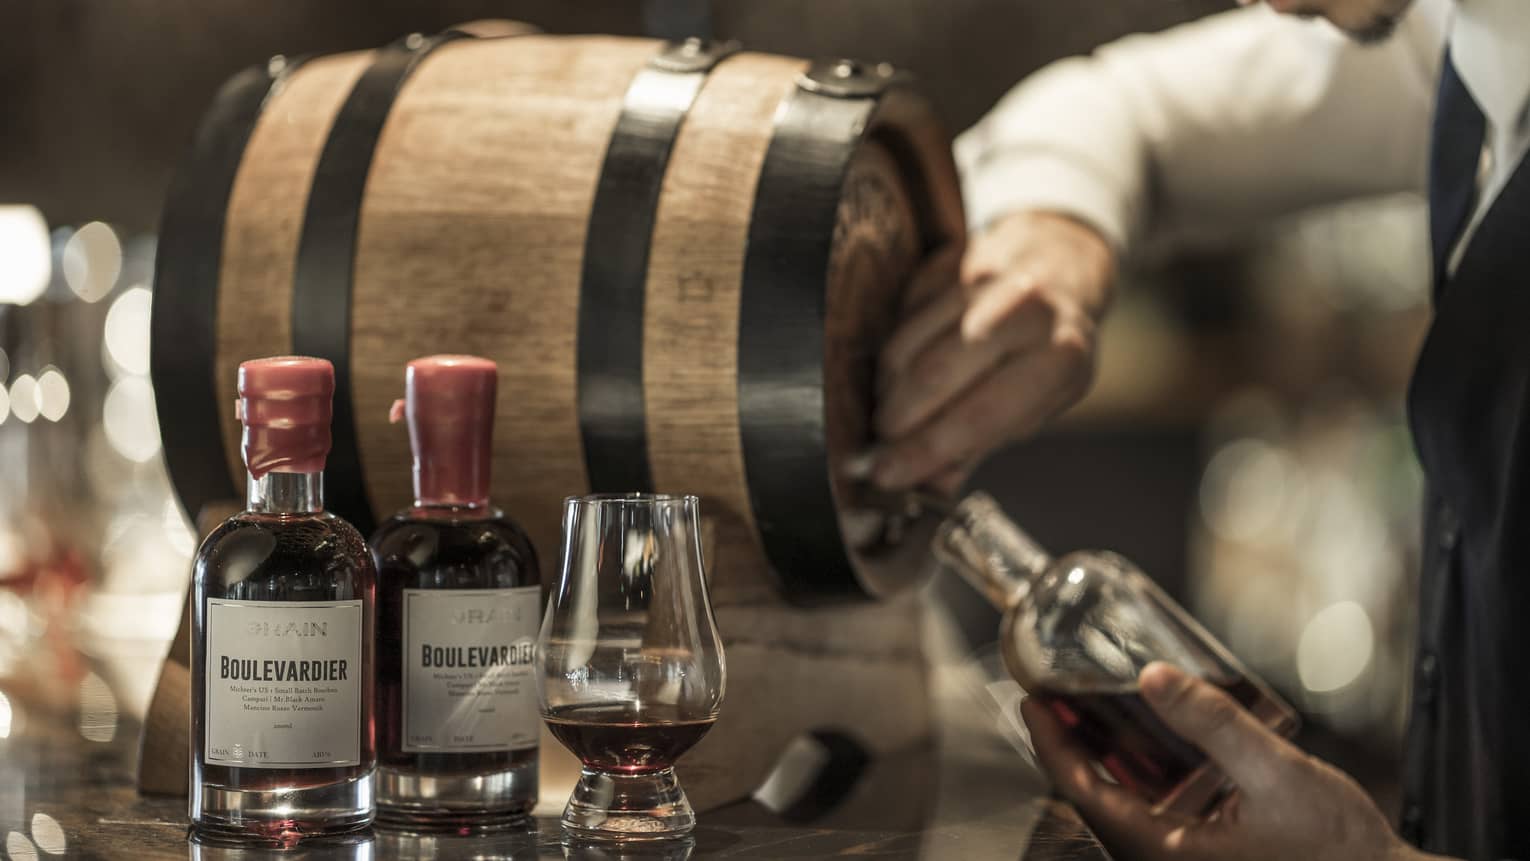 Bartender pours whisky from small barrel into bottle beside liquor bottles, glass